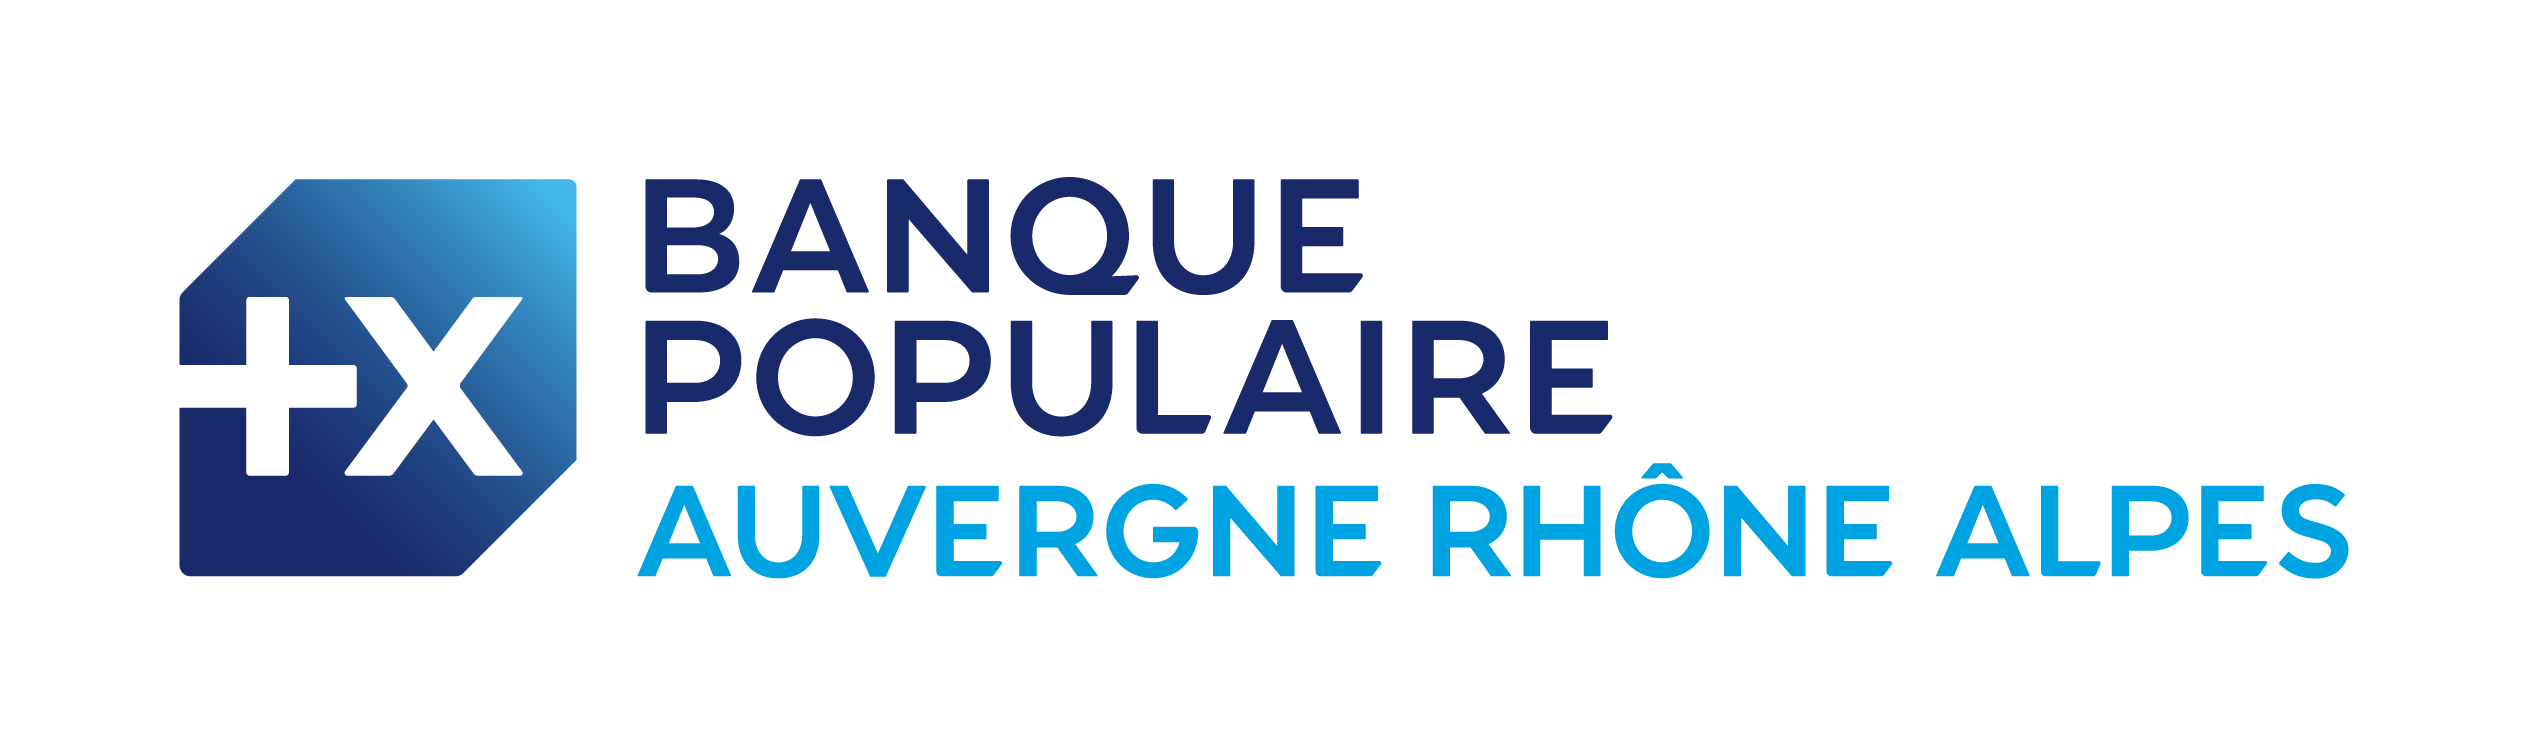 Banque populaire Auvergne-Rhône-Alpes